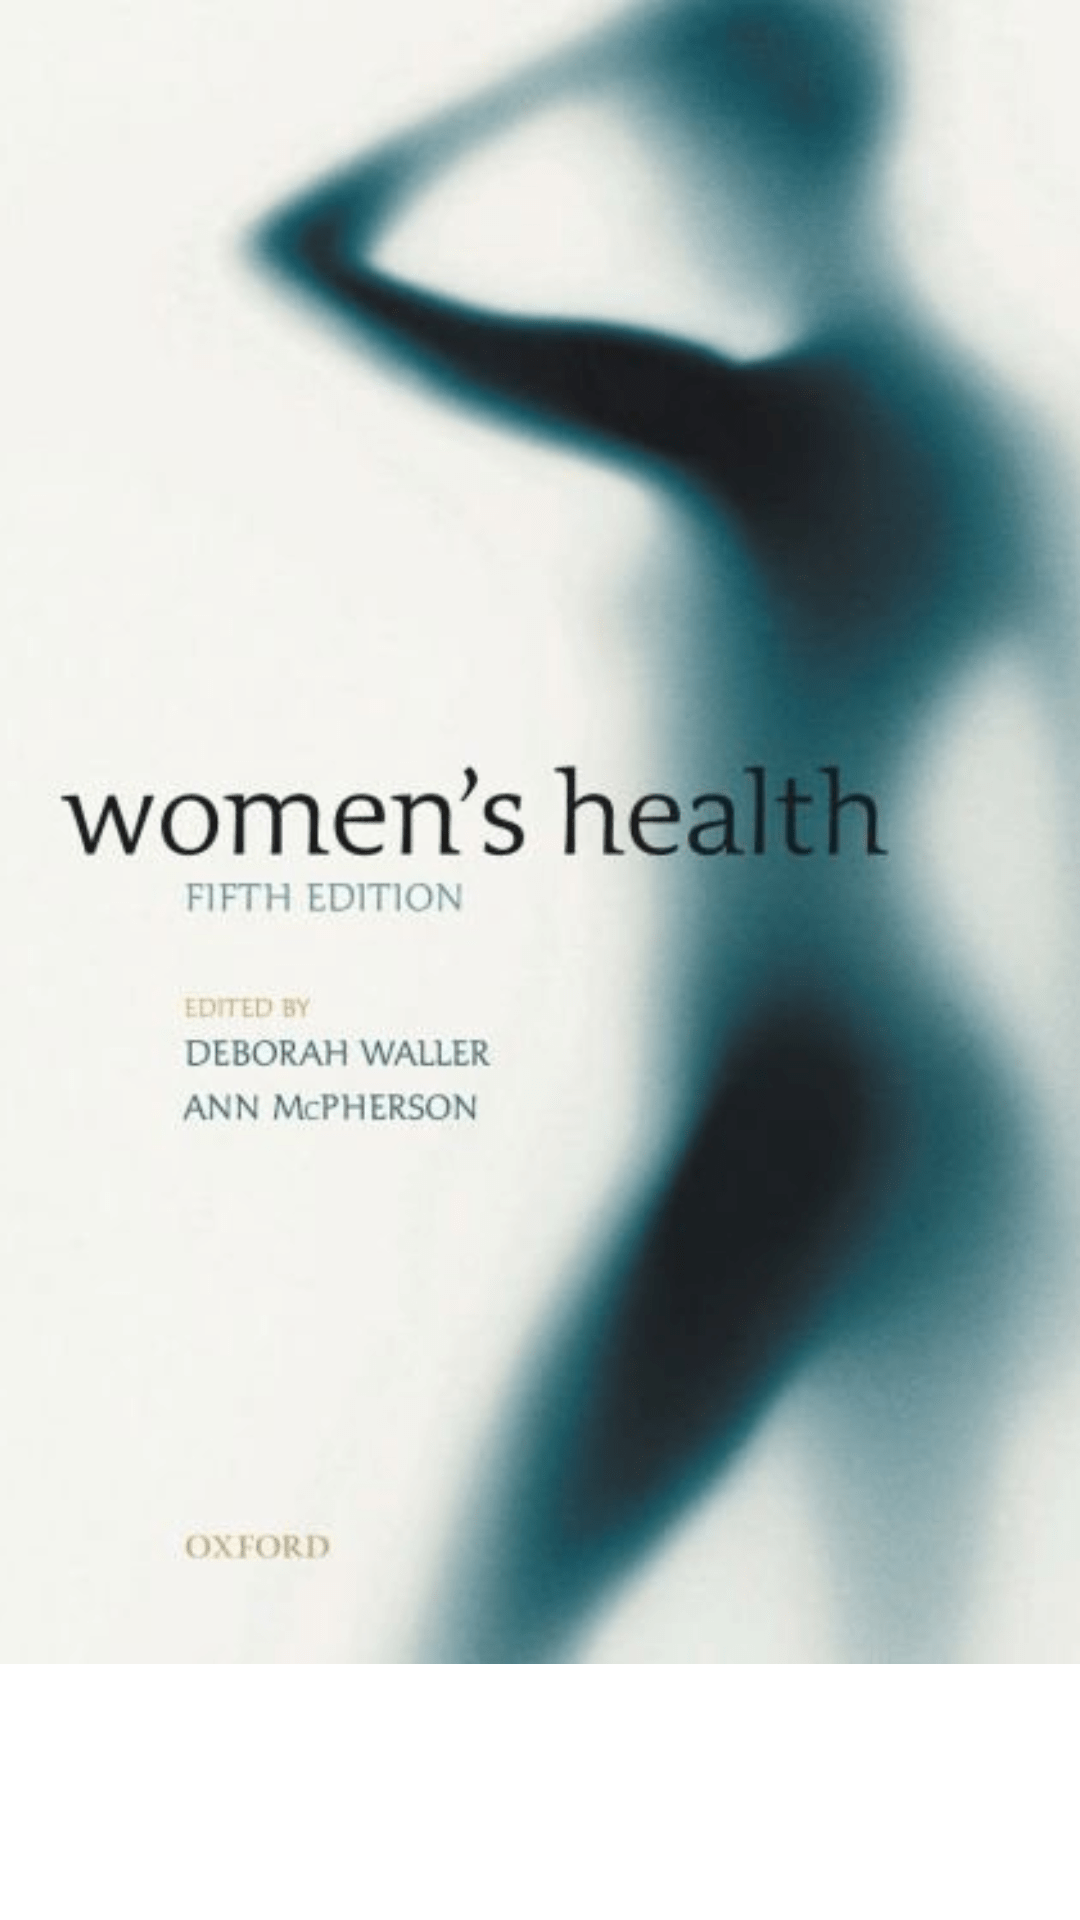 Women's Health by Deborah Waller